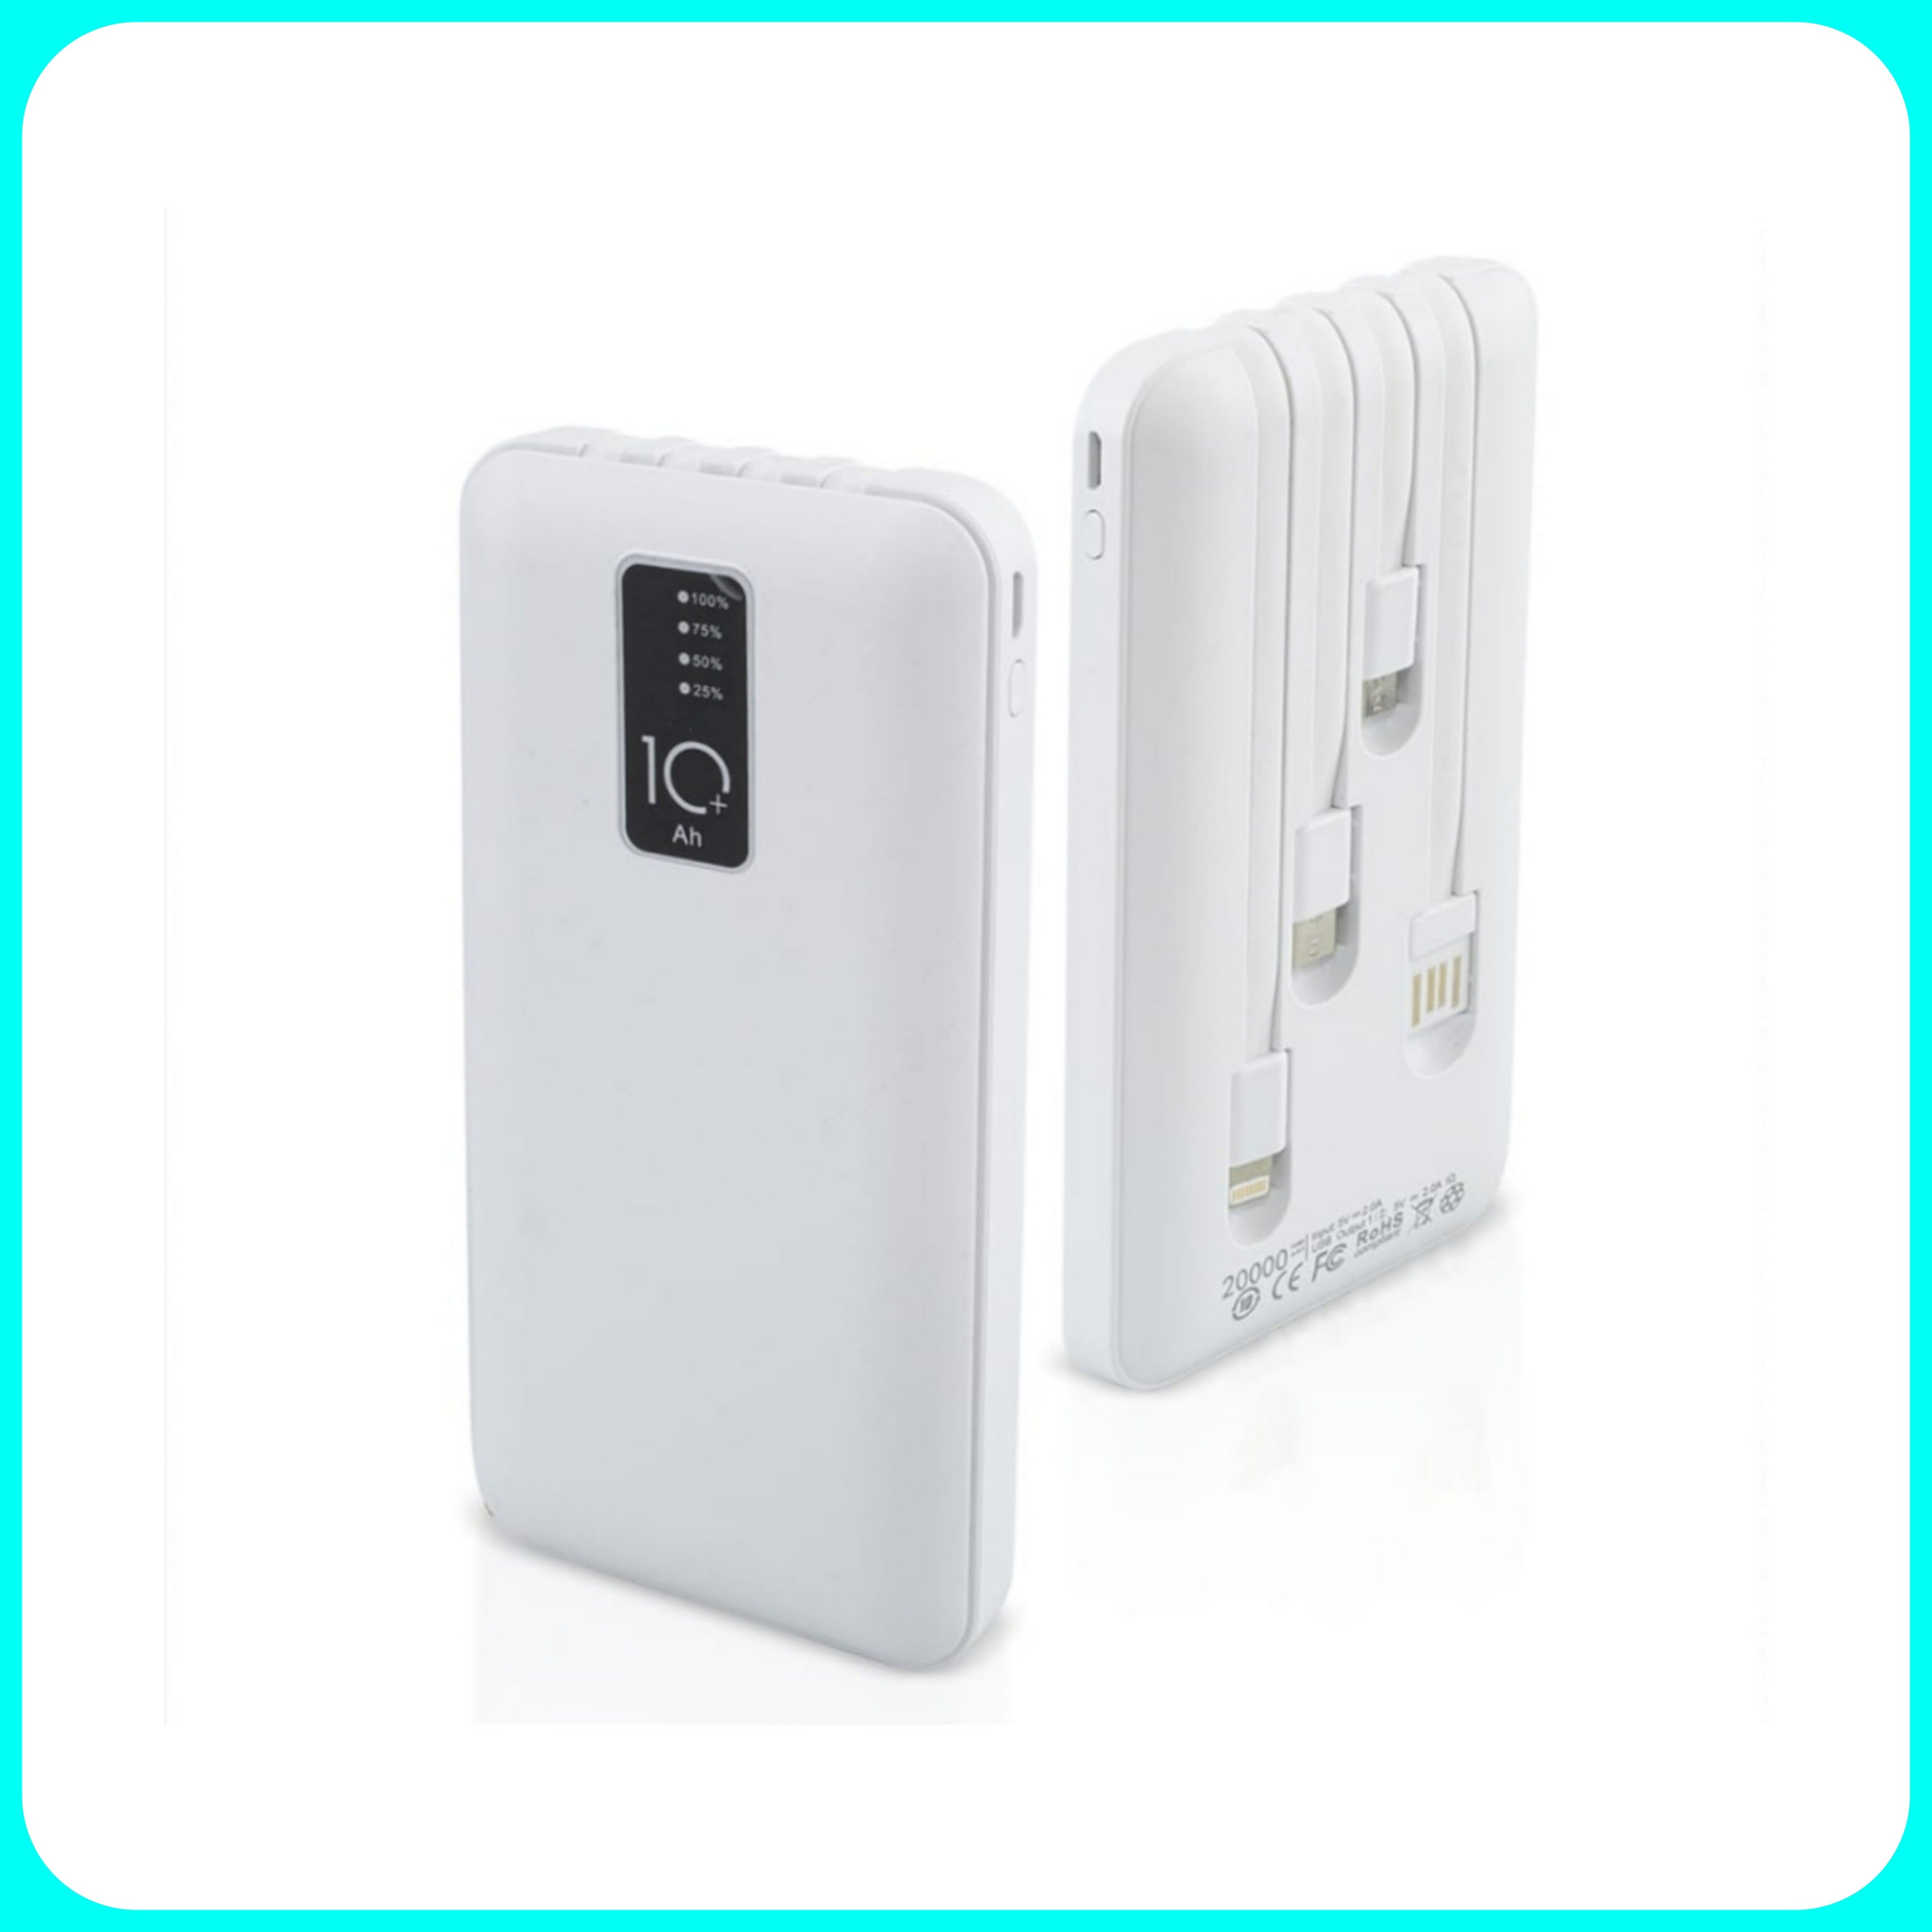 Chargeur de batterie portable Powerbank - Avec 4 câbles de charge inclus Matière : ABS et Aluminium Dimensions : 14x7x1,5 cm